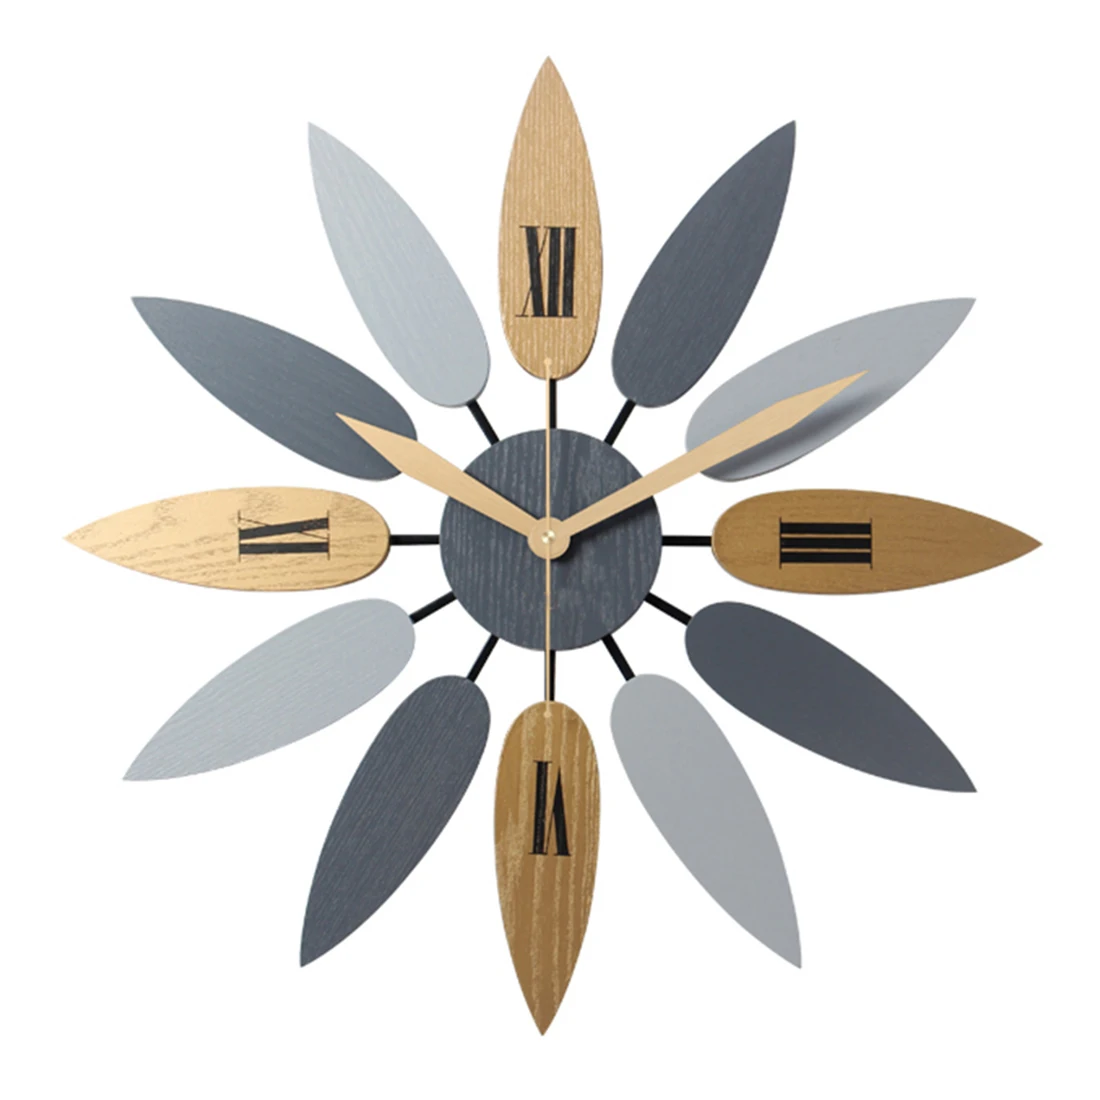 52 см в скандинавском стиле креативные листообразные кварцевые настенные часы винтажные бесшумные часы лаконичный стиль для домашнего офиса Декор для гостиной - Цвет: As Shown